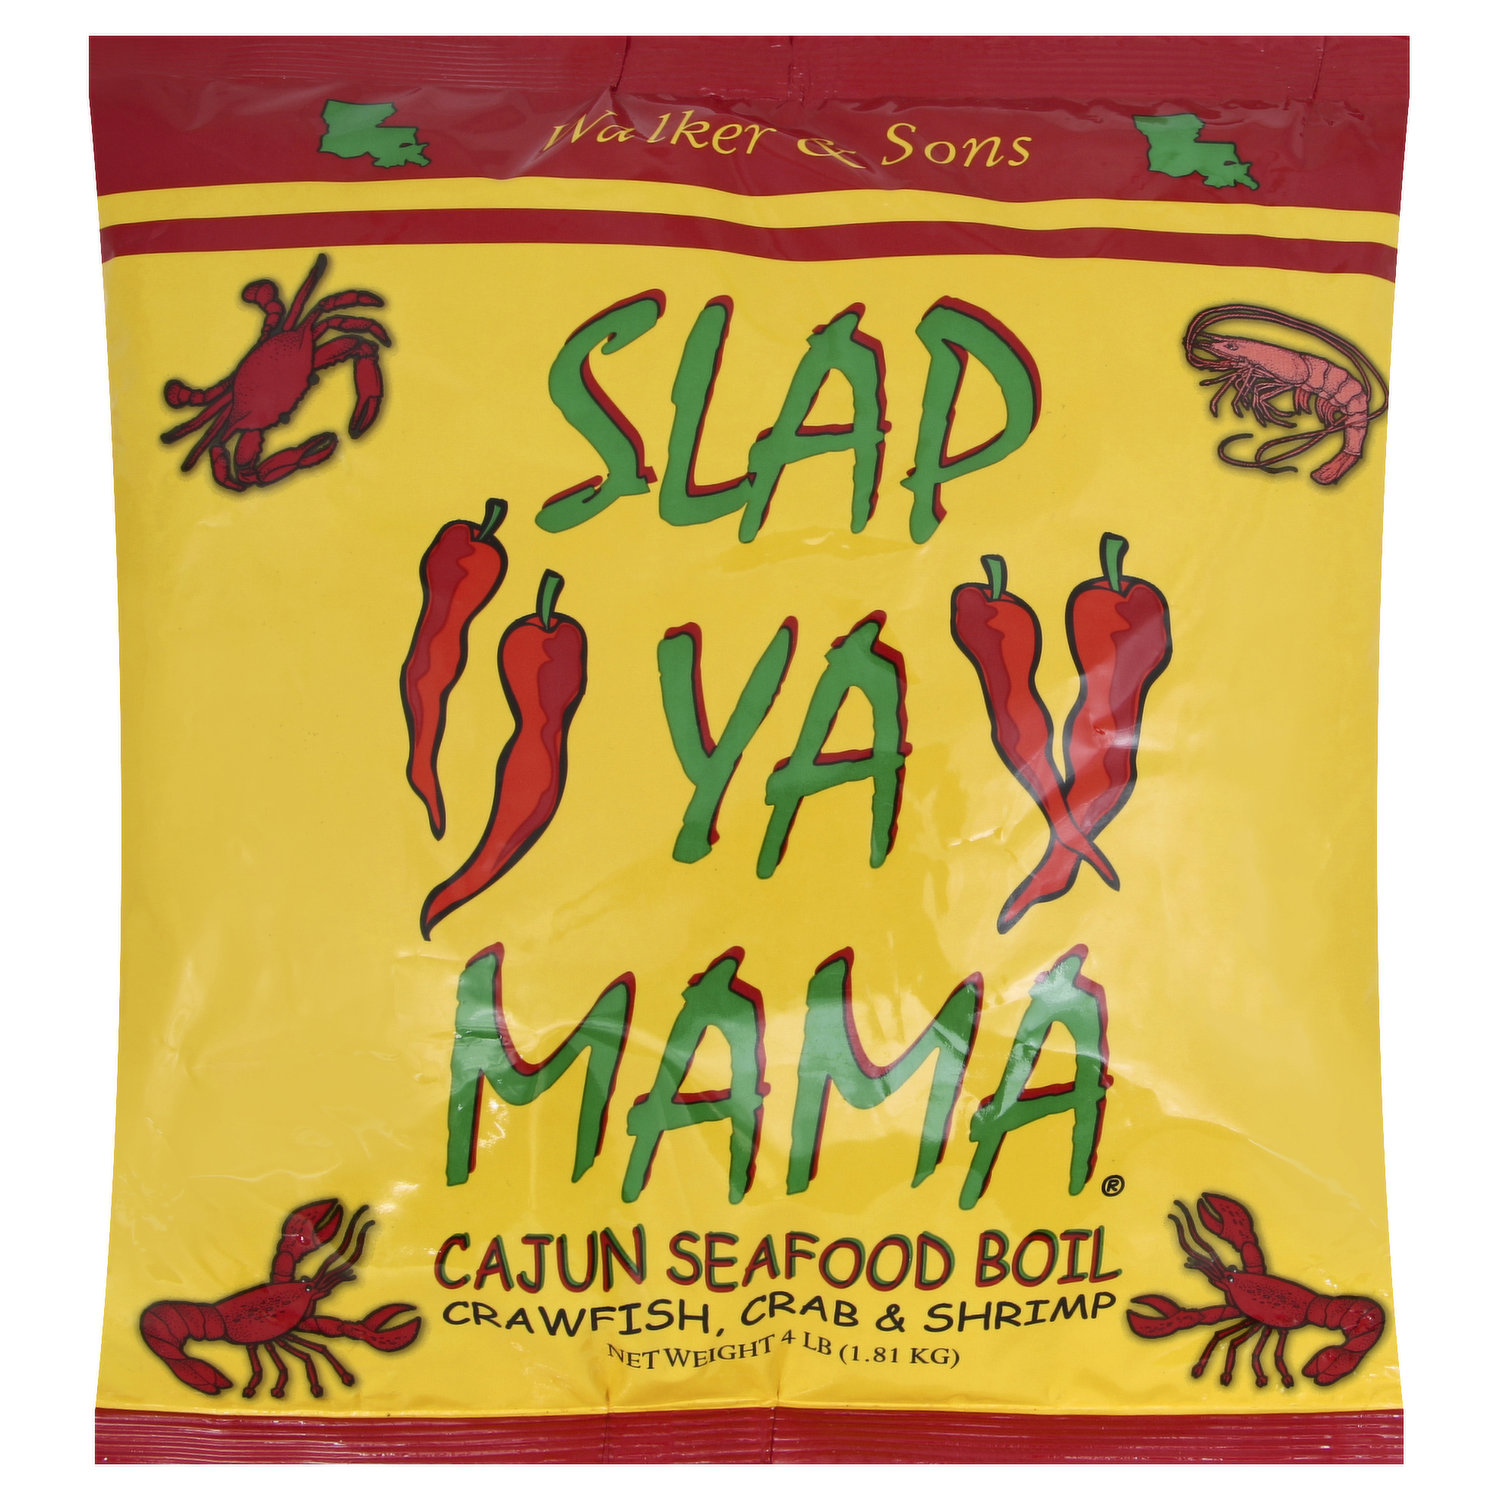 Slap Ya Mama Low Sodium Cajun Seasoning 8 oz.  Cajun seasoning, Cajun,  Seafood boil seasoning